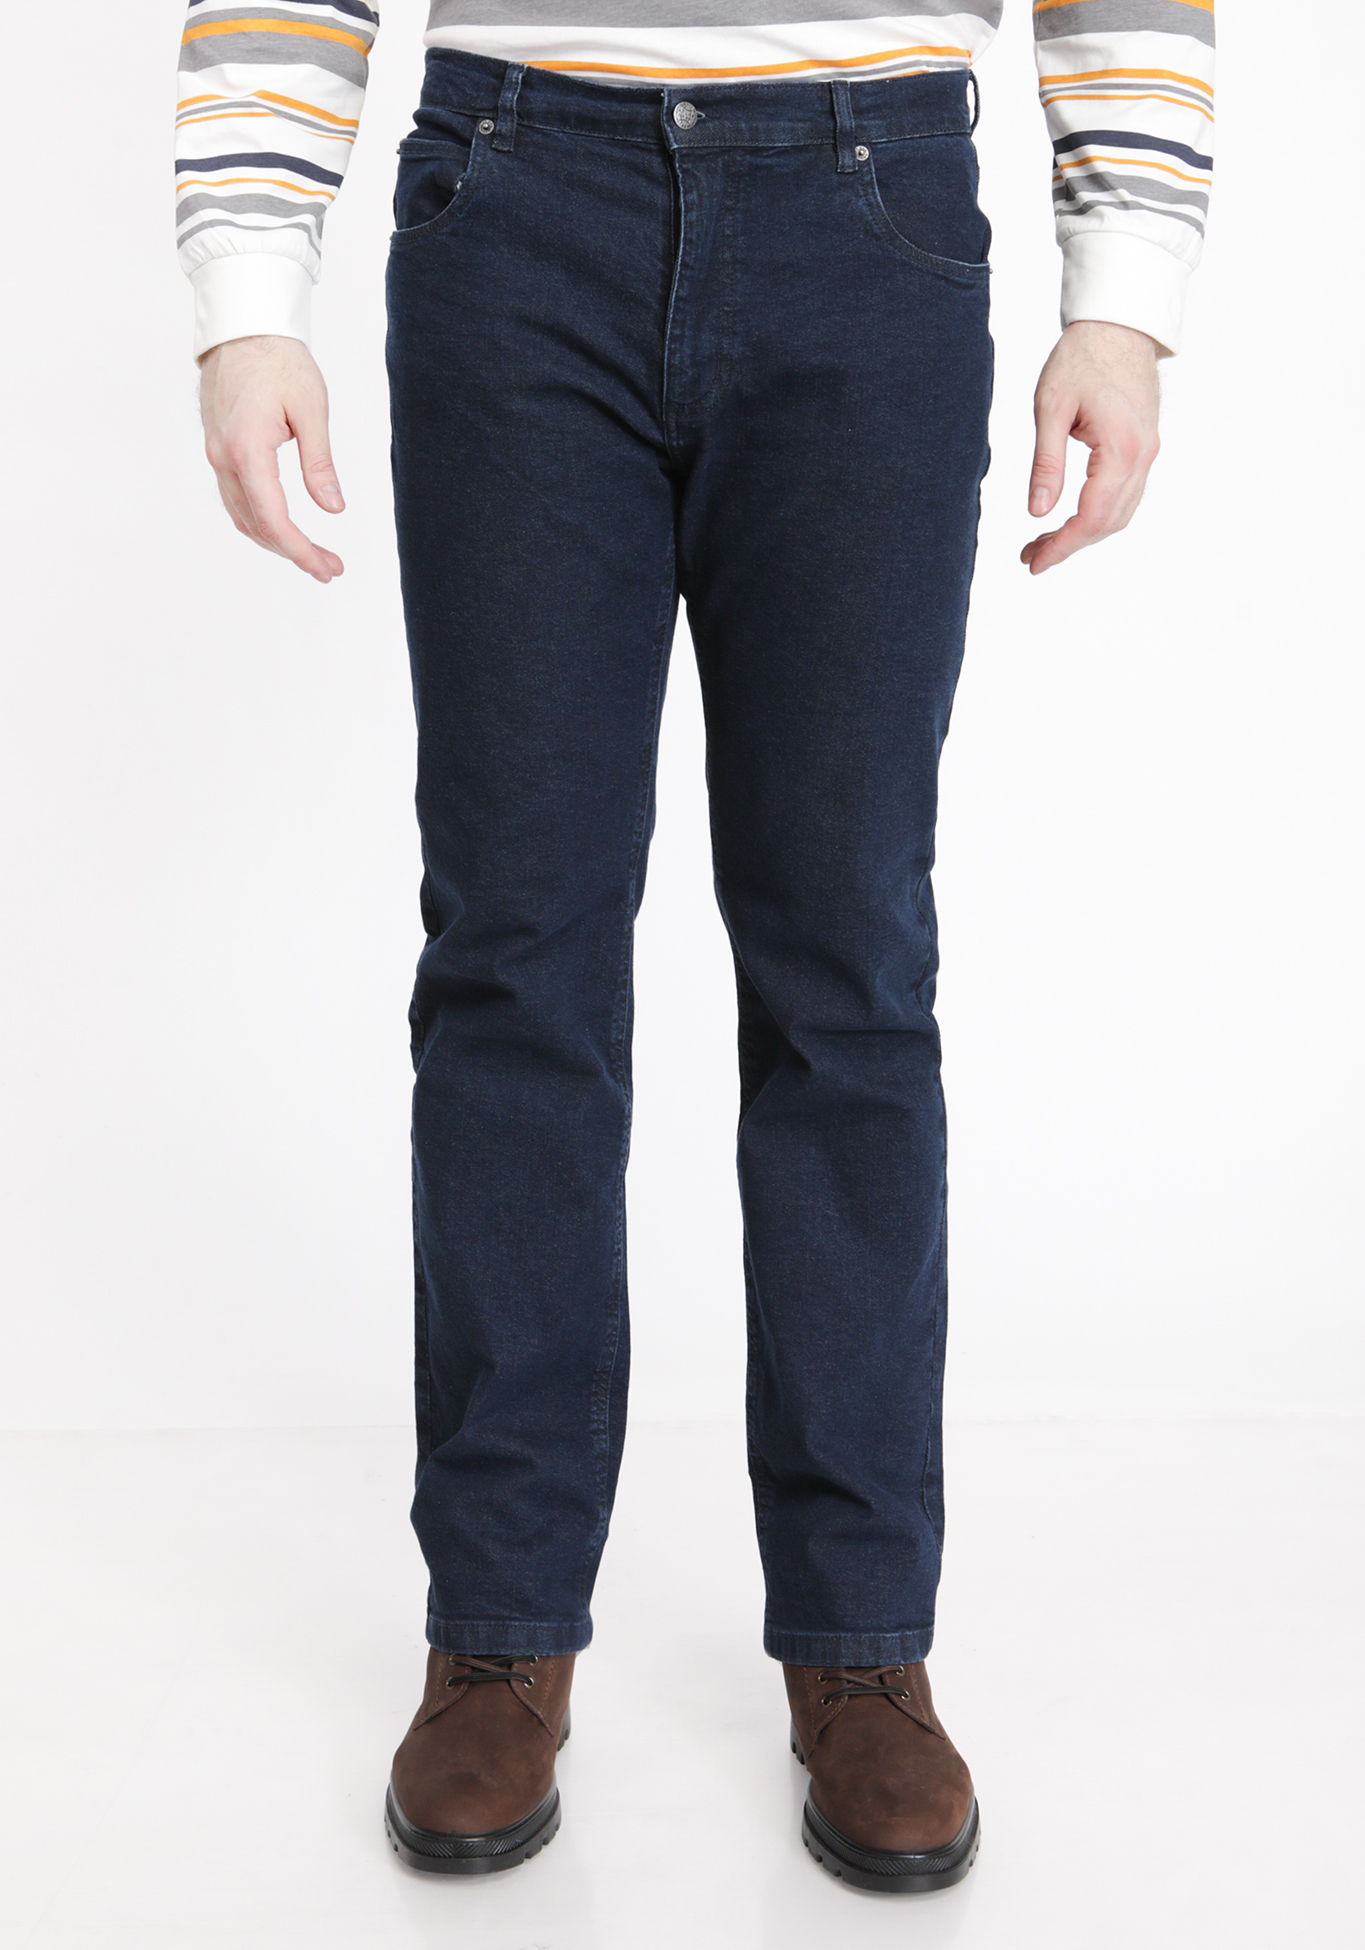 Джинсы классического кроя джинсы прямого кроя с комфортным поясом